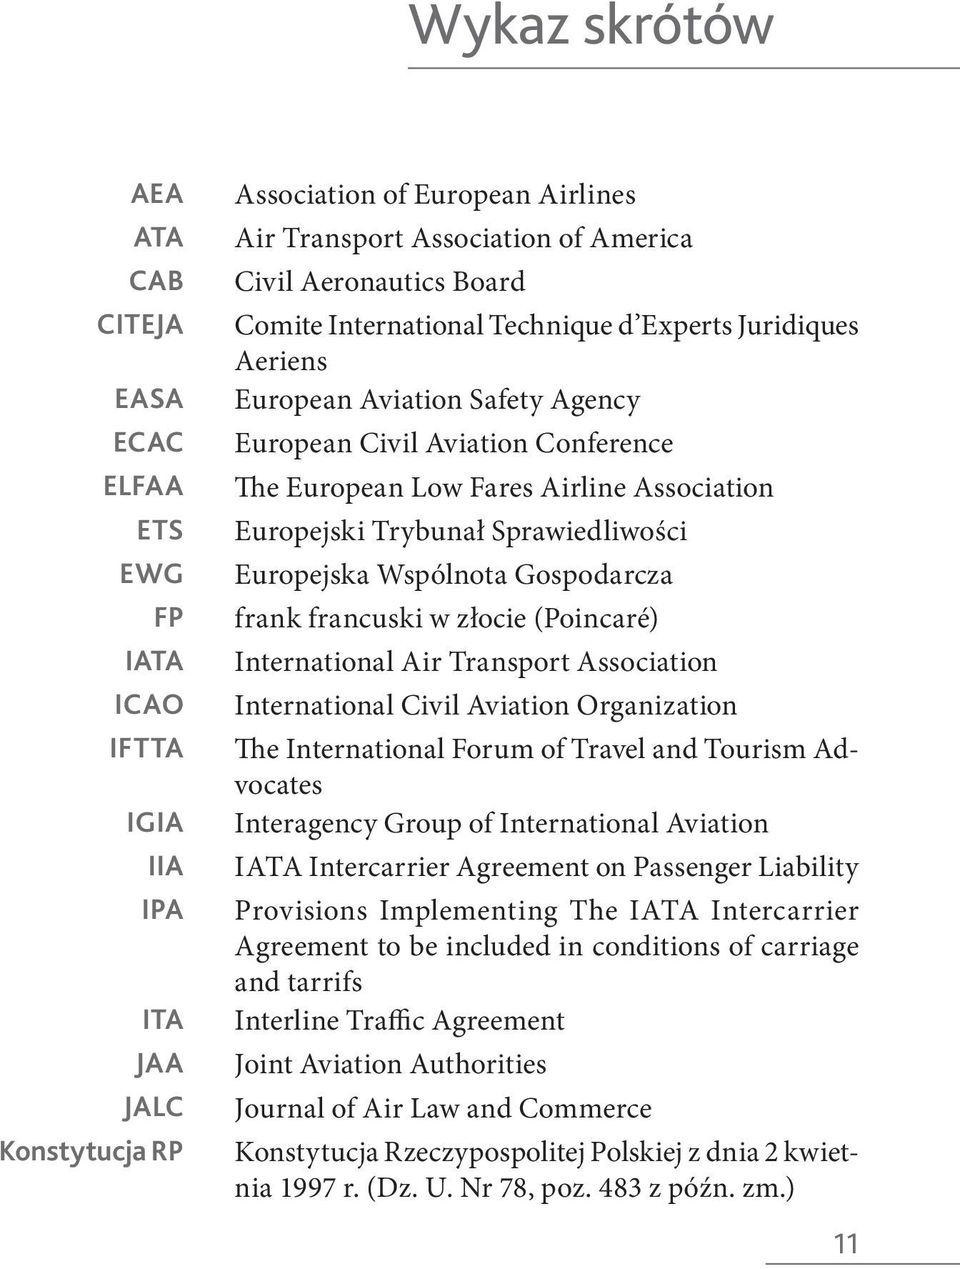 Association Europejski Trybunał Sprawiedliwości Europejska Wspólnota Gospodarcza frank francuski w złocie (Poincaré) International Air Transport Association International Civil Aviation Organization